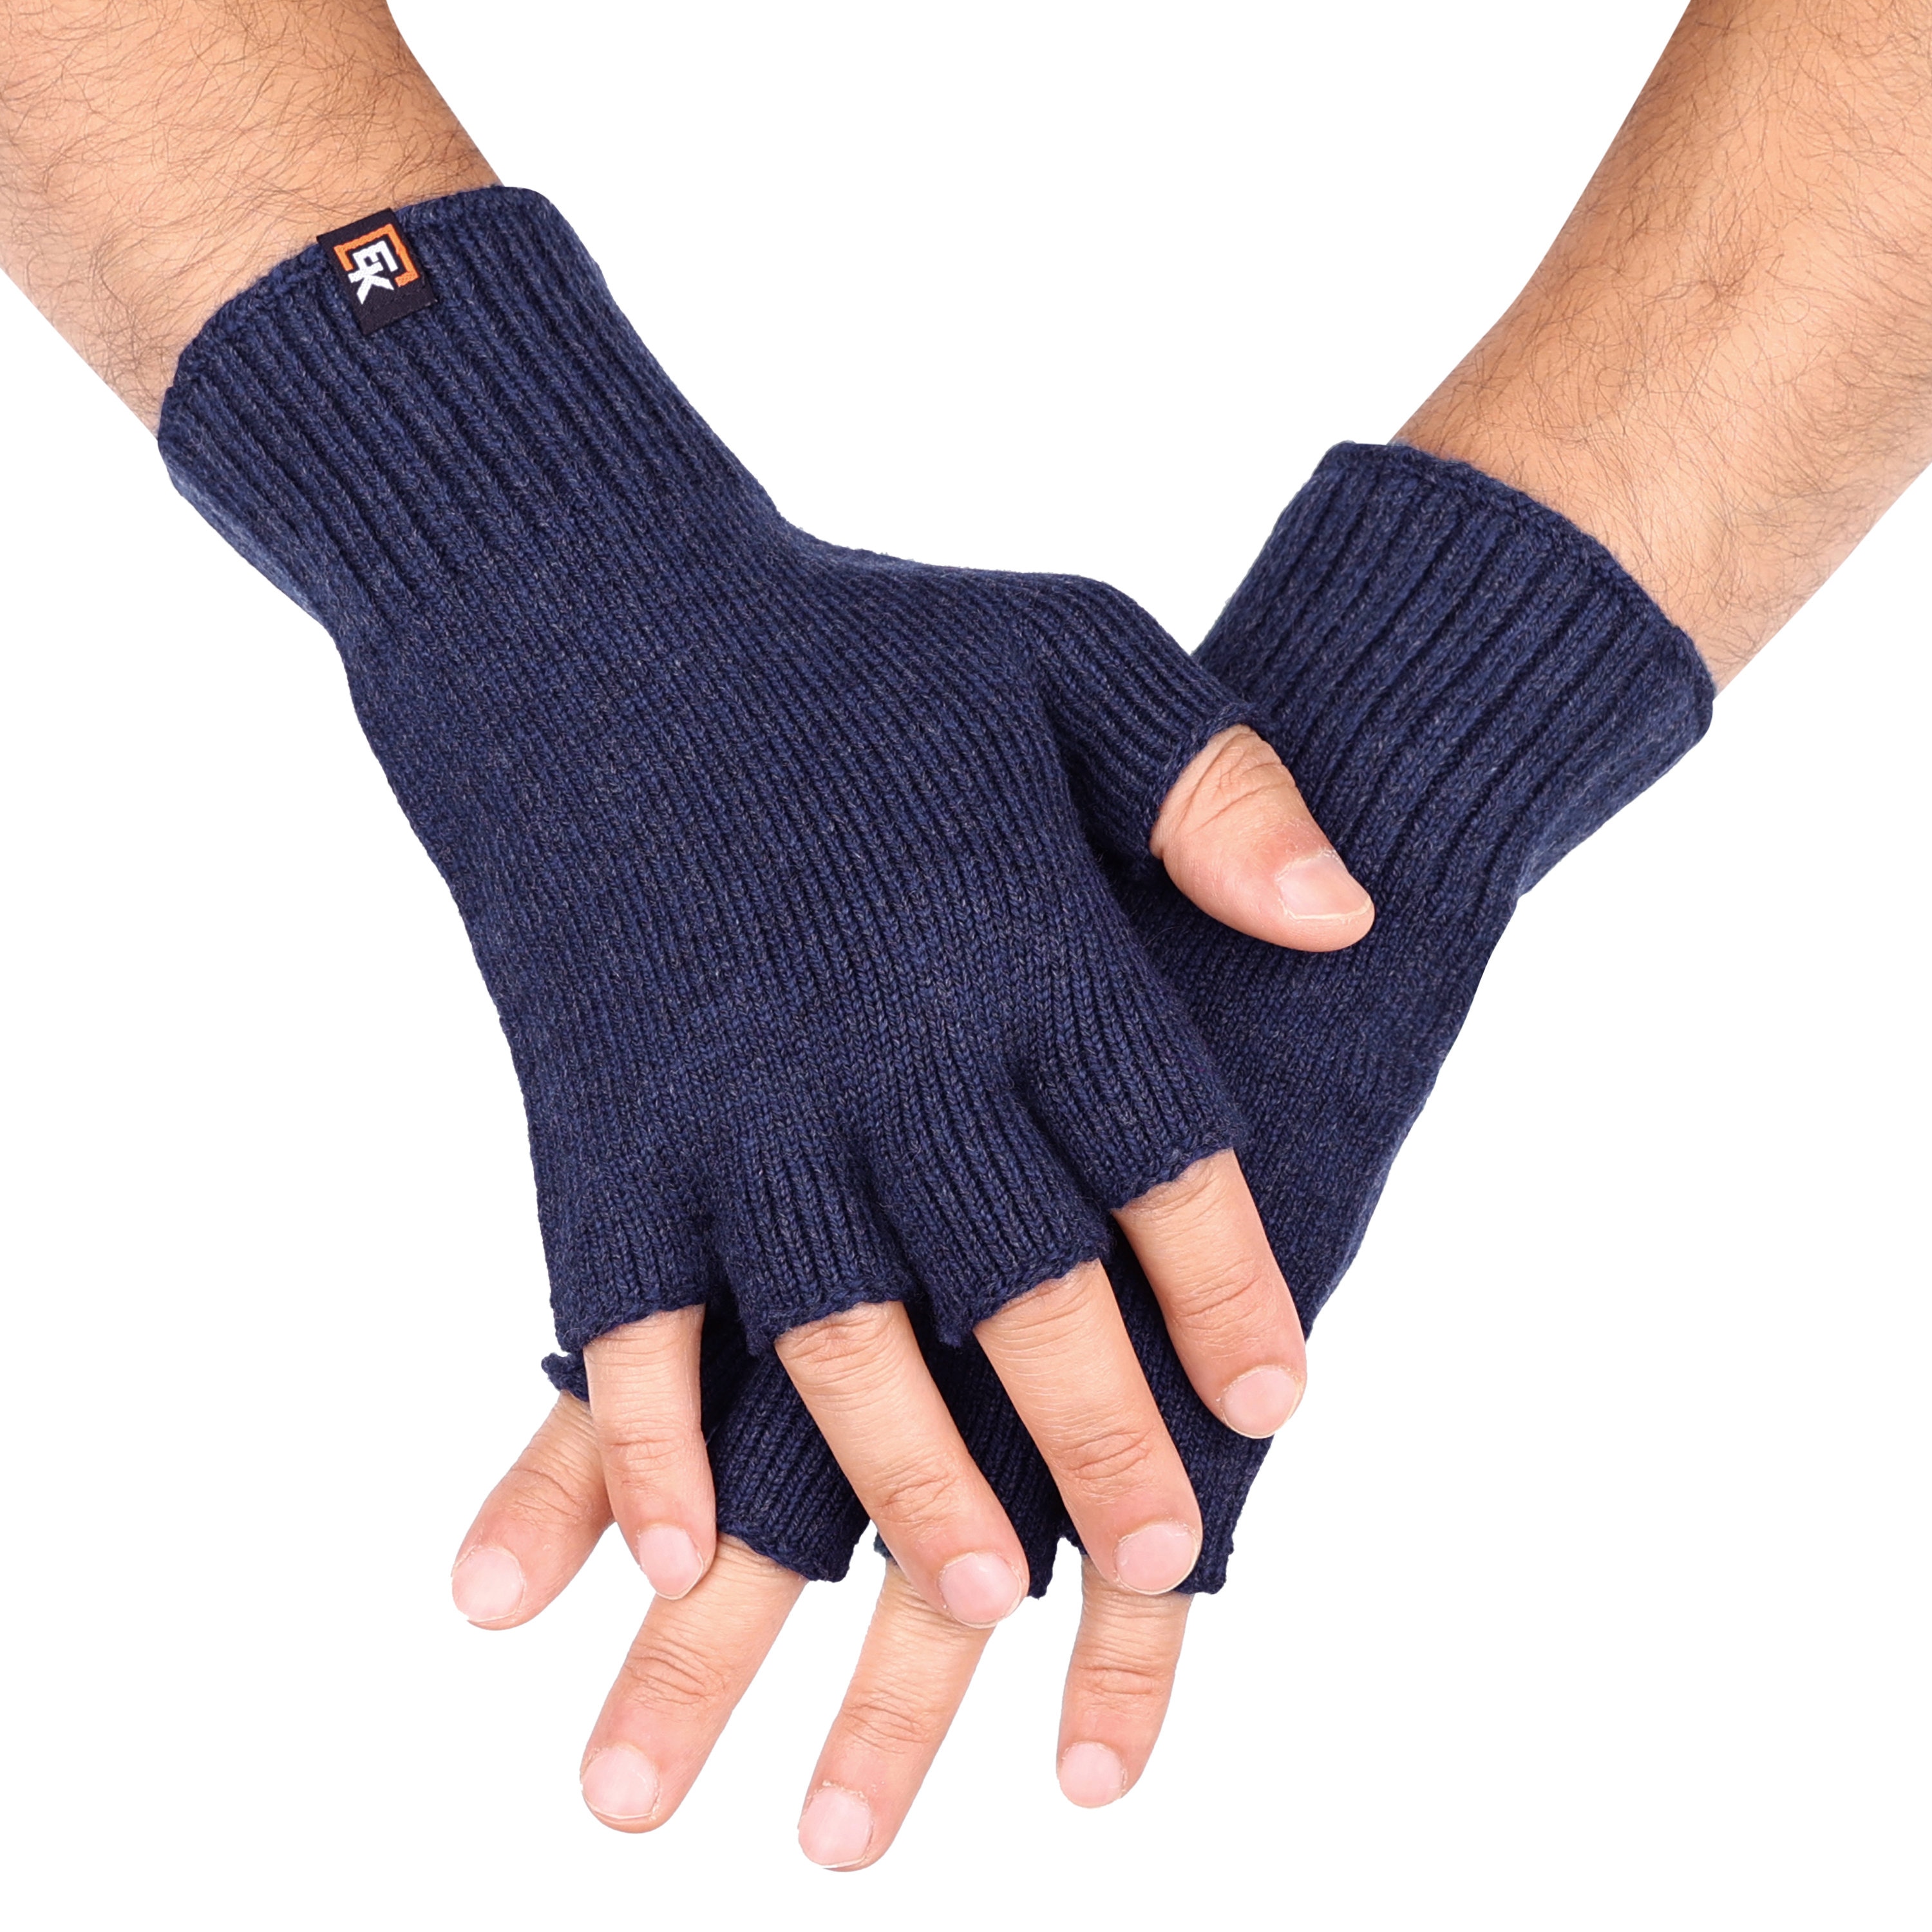 Merino Wool Fingerless Gloves for Men - Super Soft Merino Wool - Made in the USA